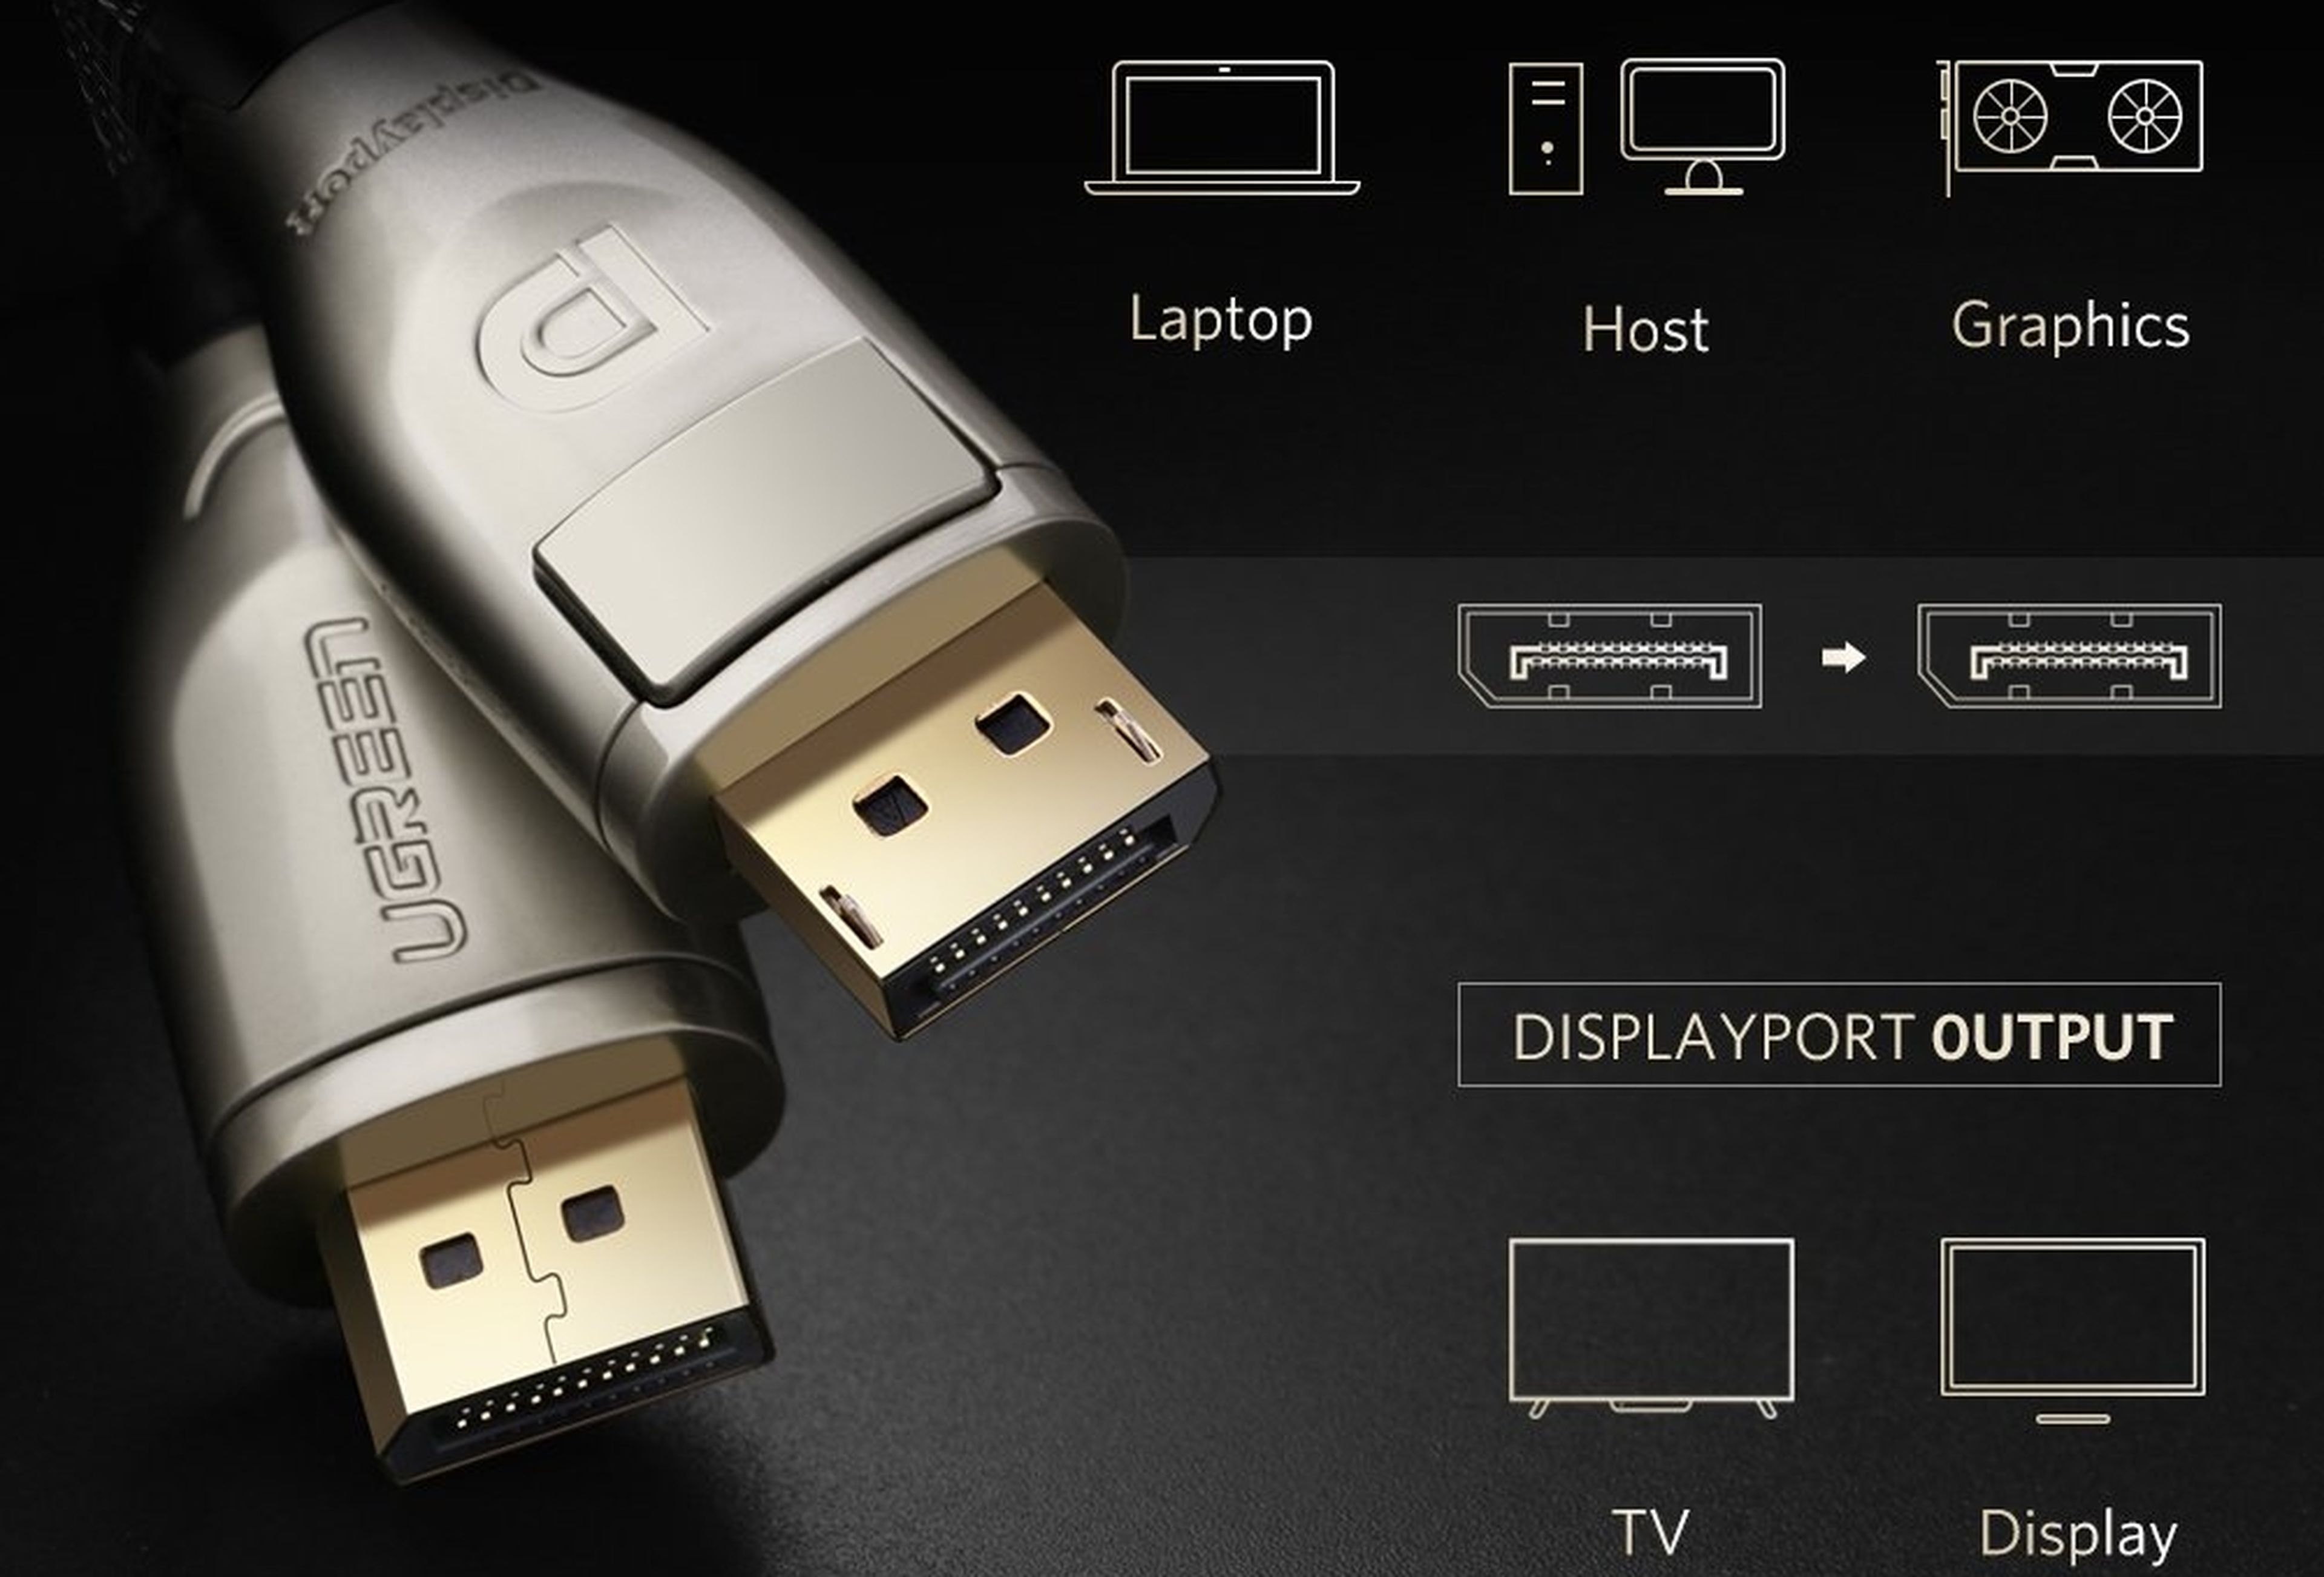 DisplayPort 1.4 vs HDMI 2.1: características y diferencias